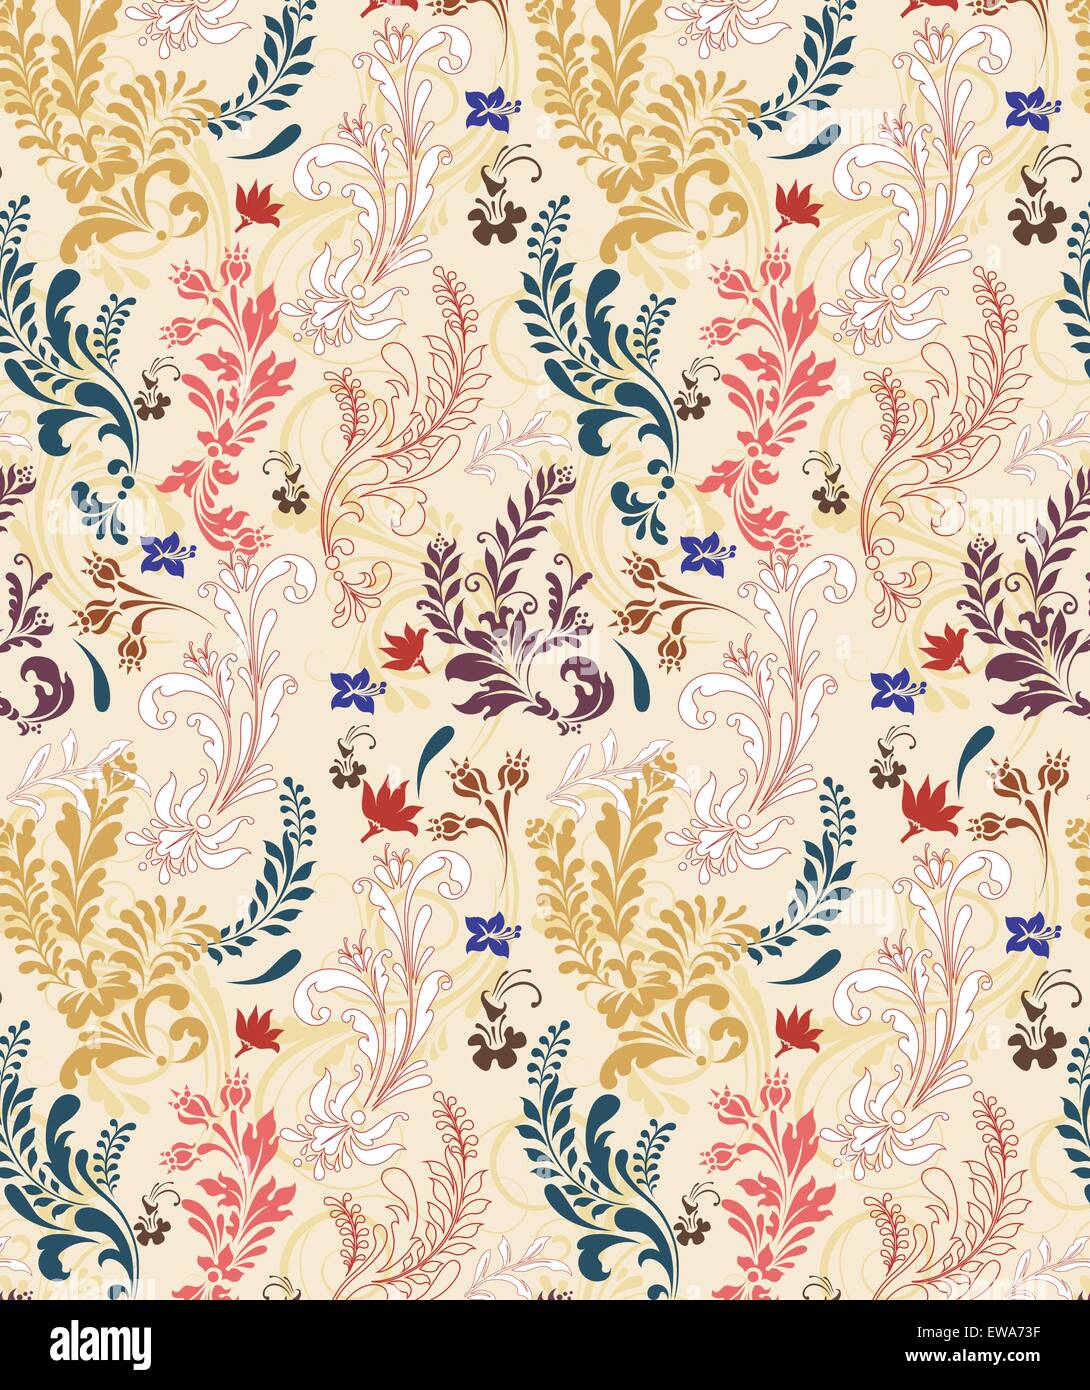 Antecedentes Vintage Retro elegante adornados con diseño floral abstracto, multicolor de flores y hojas sobre fondo beige Ilustración del Vector